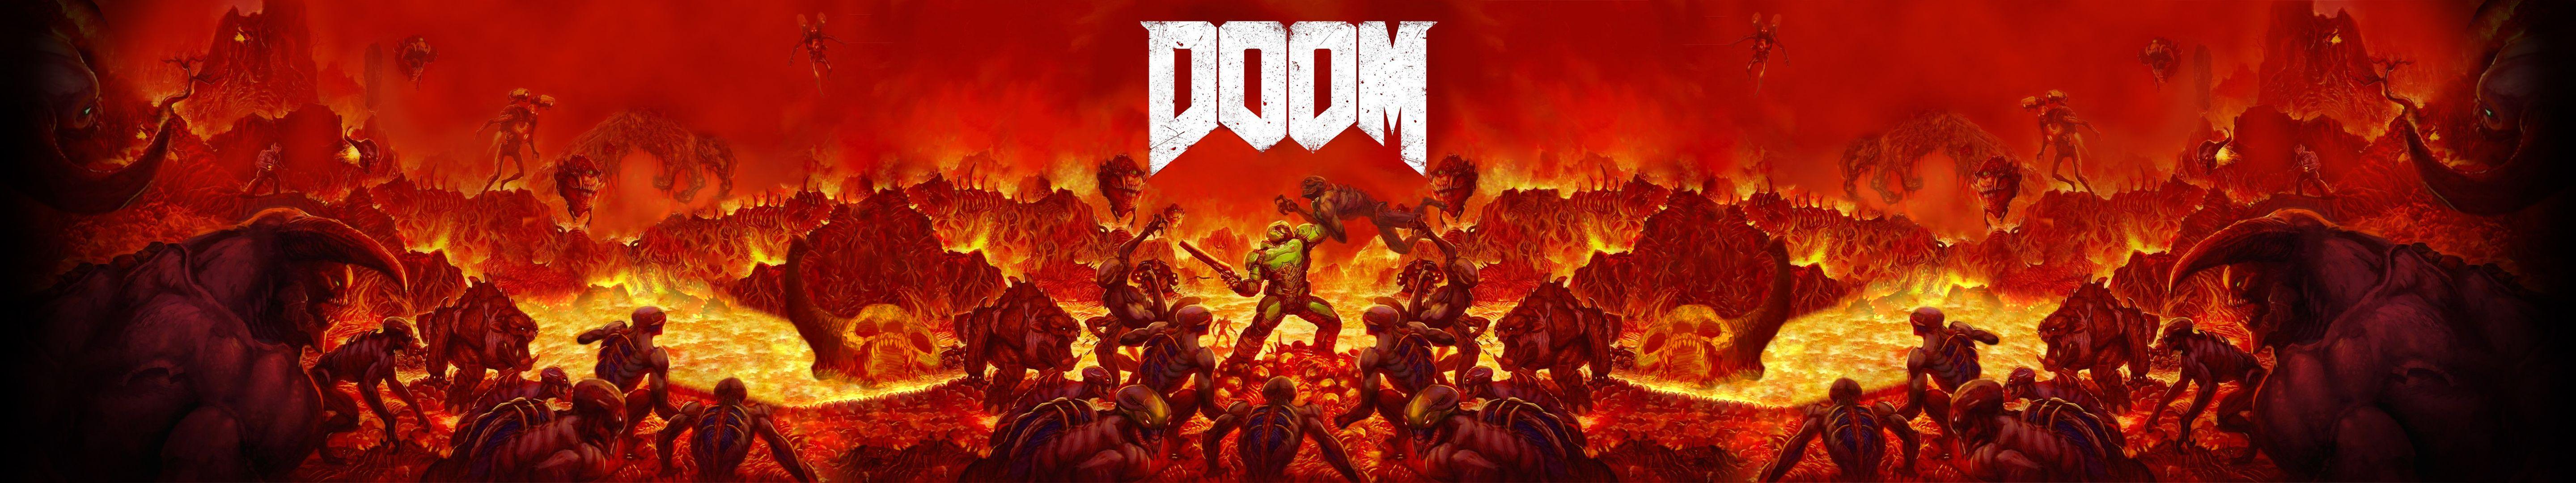 Doom Wallpaper 5760x1080 (Using original game artwork)